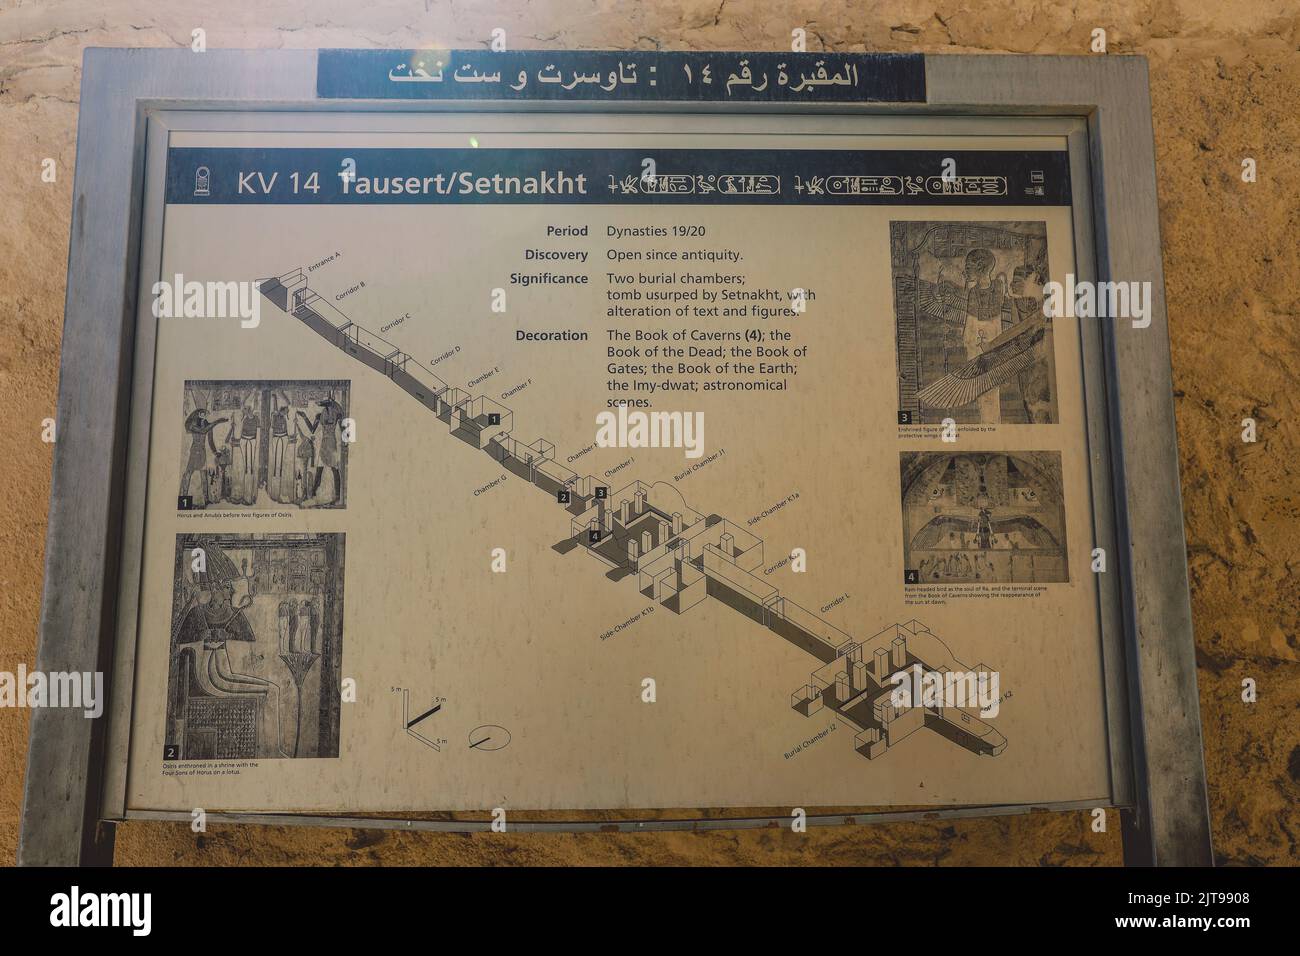 Bild der altägyptischen Grabkarte im Tal der Könige in Luxor, Ägypten Stockfoto